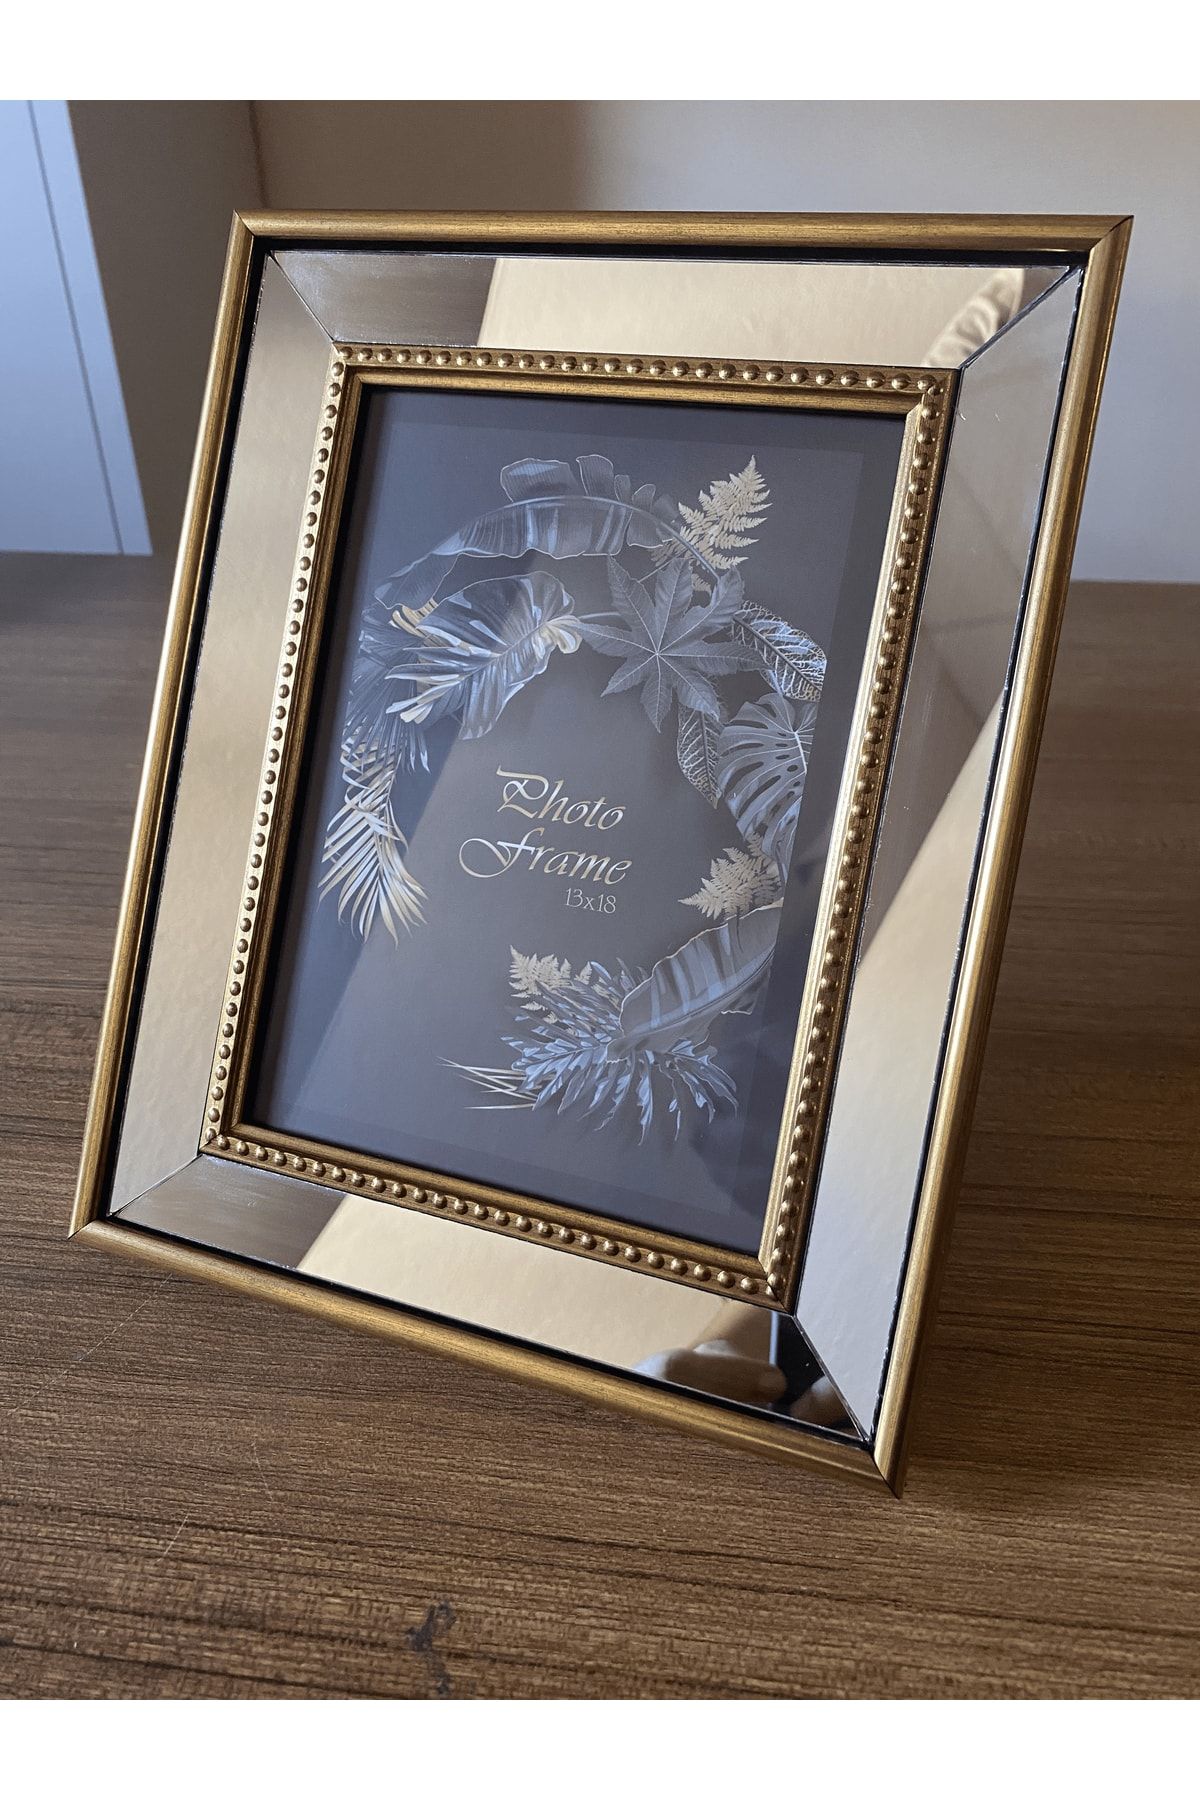 BELLARTE Aynalı Çerçeve, Cam Aynalı Altın Renk Çerçeveli Fotoğraf Çerçevesi, 13x18cm